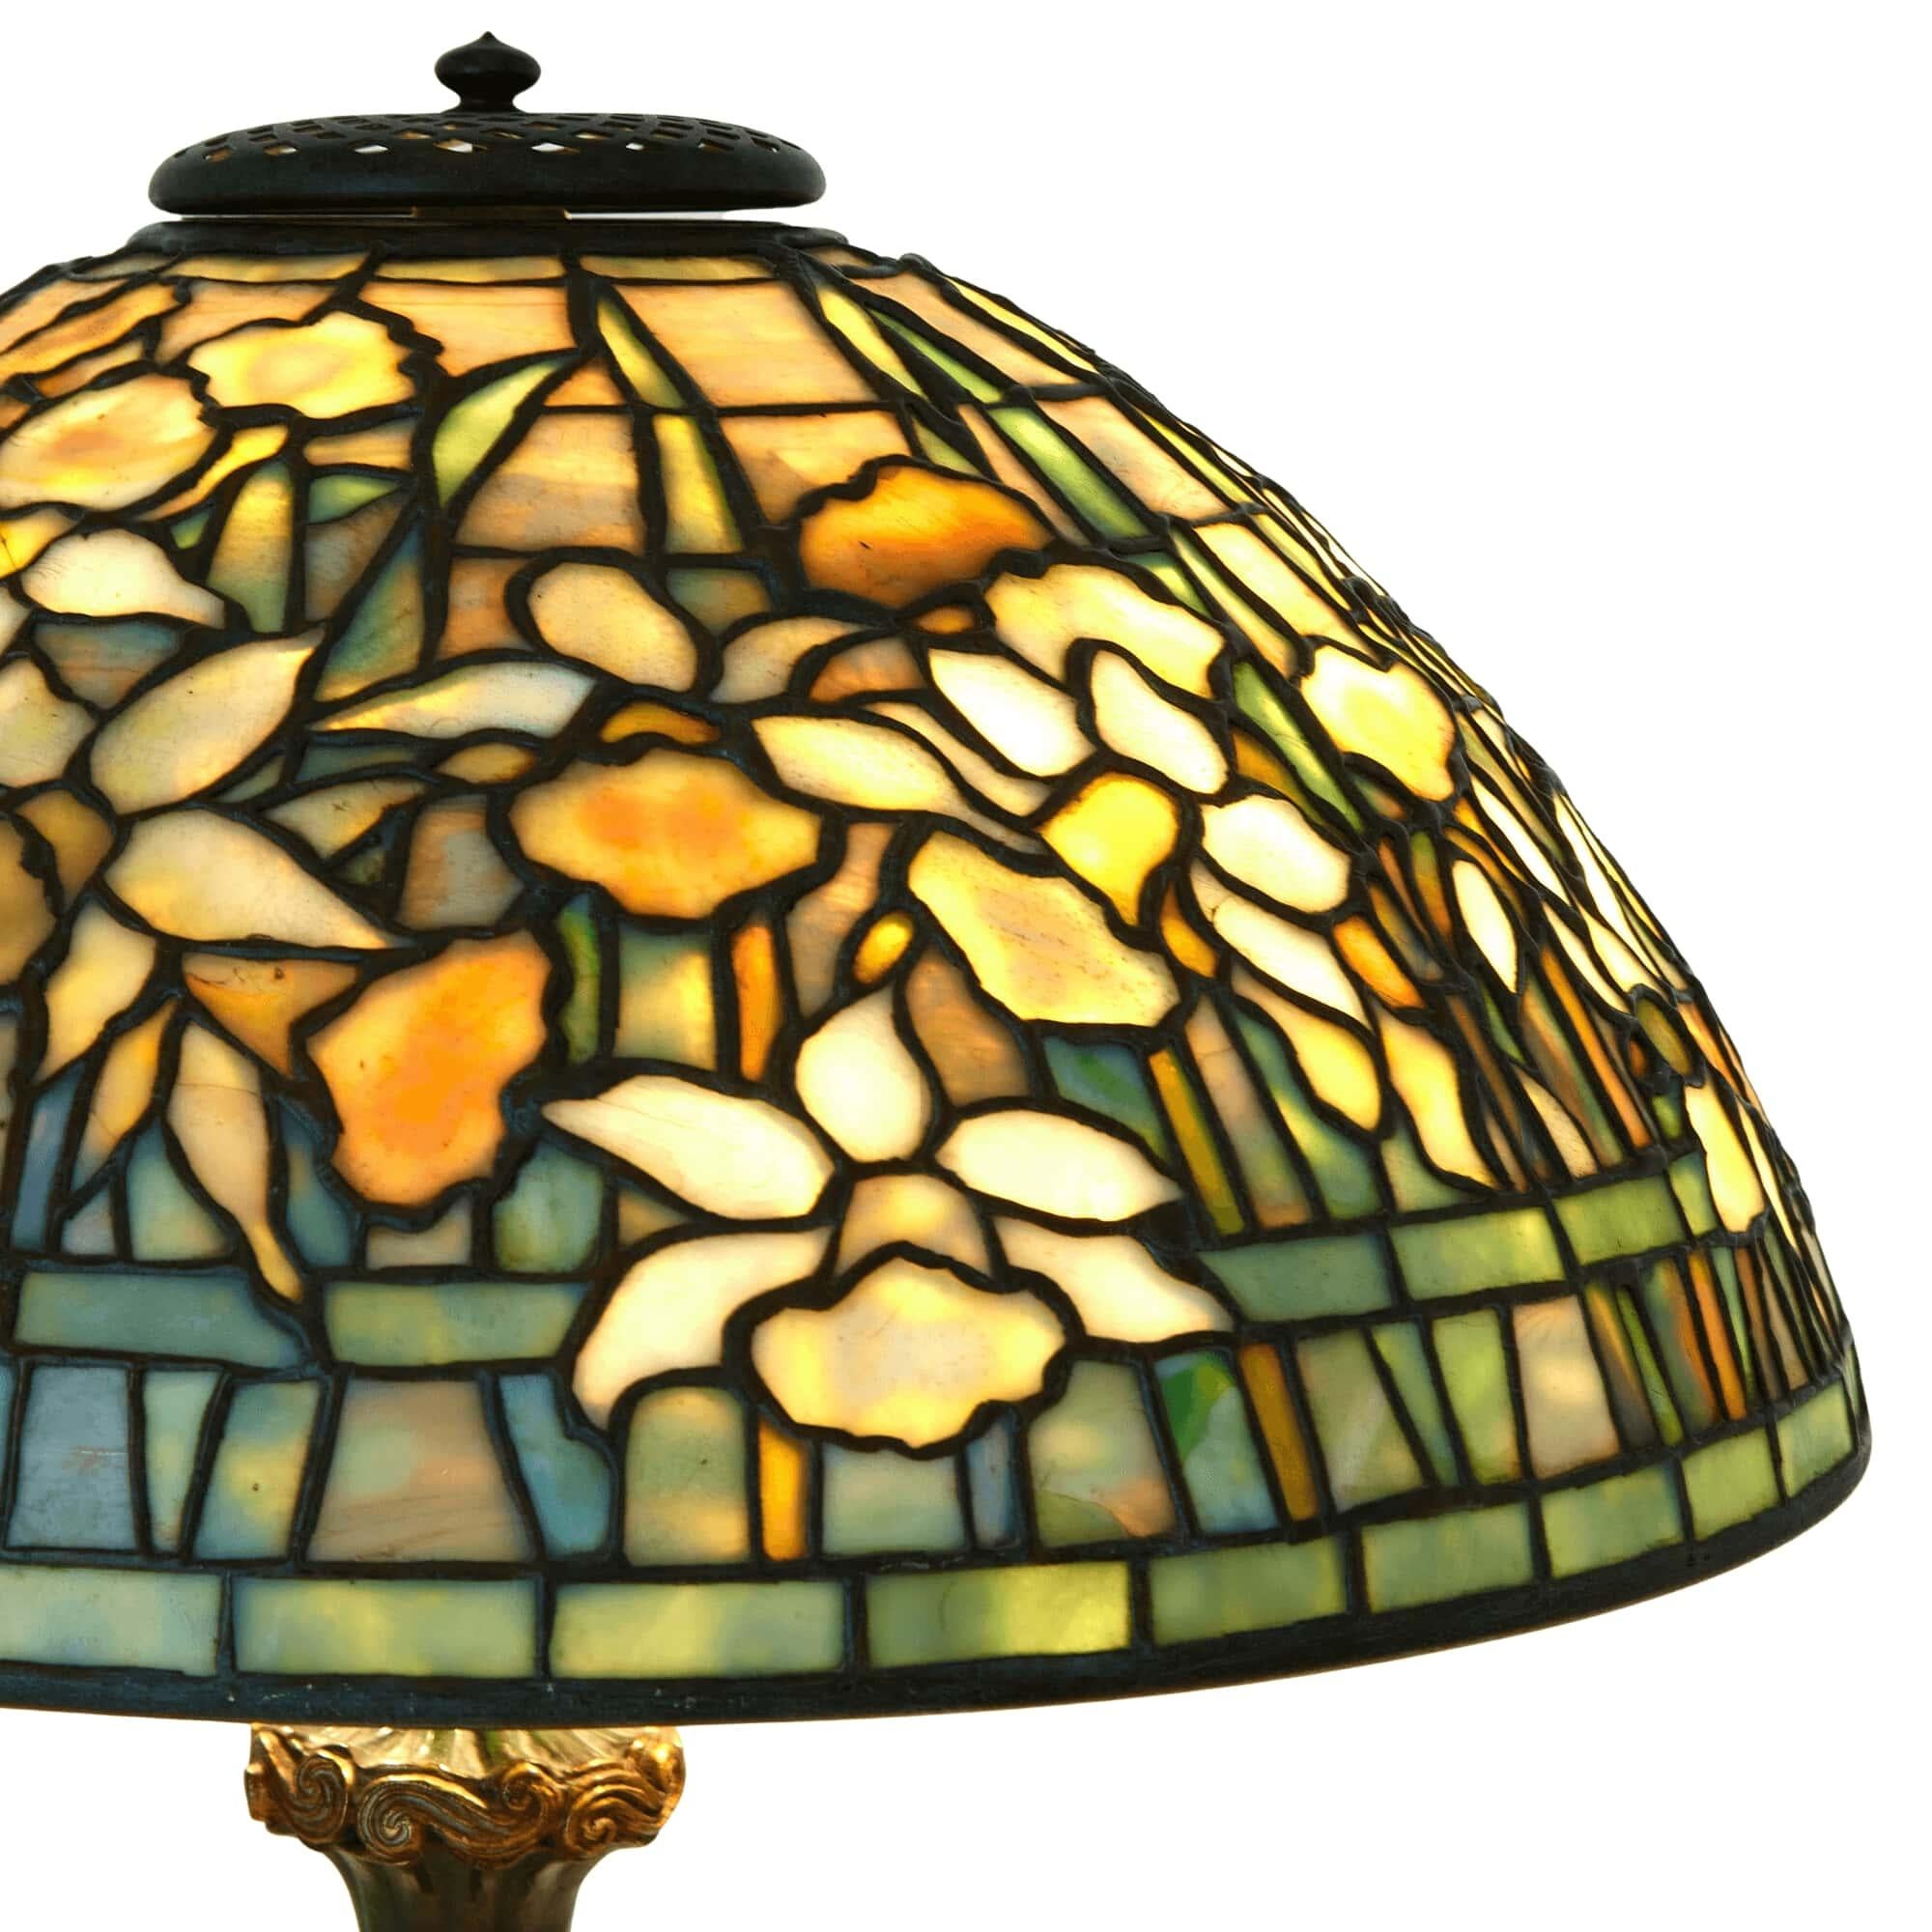 Lampe de table 'Daffodil' par Tiffany Studios
A.I.C., c. 1910
Hauteur 56 cm, diamètre 40 cm

Conçue et fabriquée à la main par les artisans des célèbres Studios Tiffany (1902-1932), cette lampe de table 